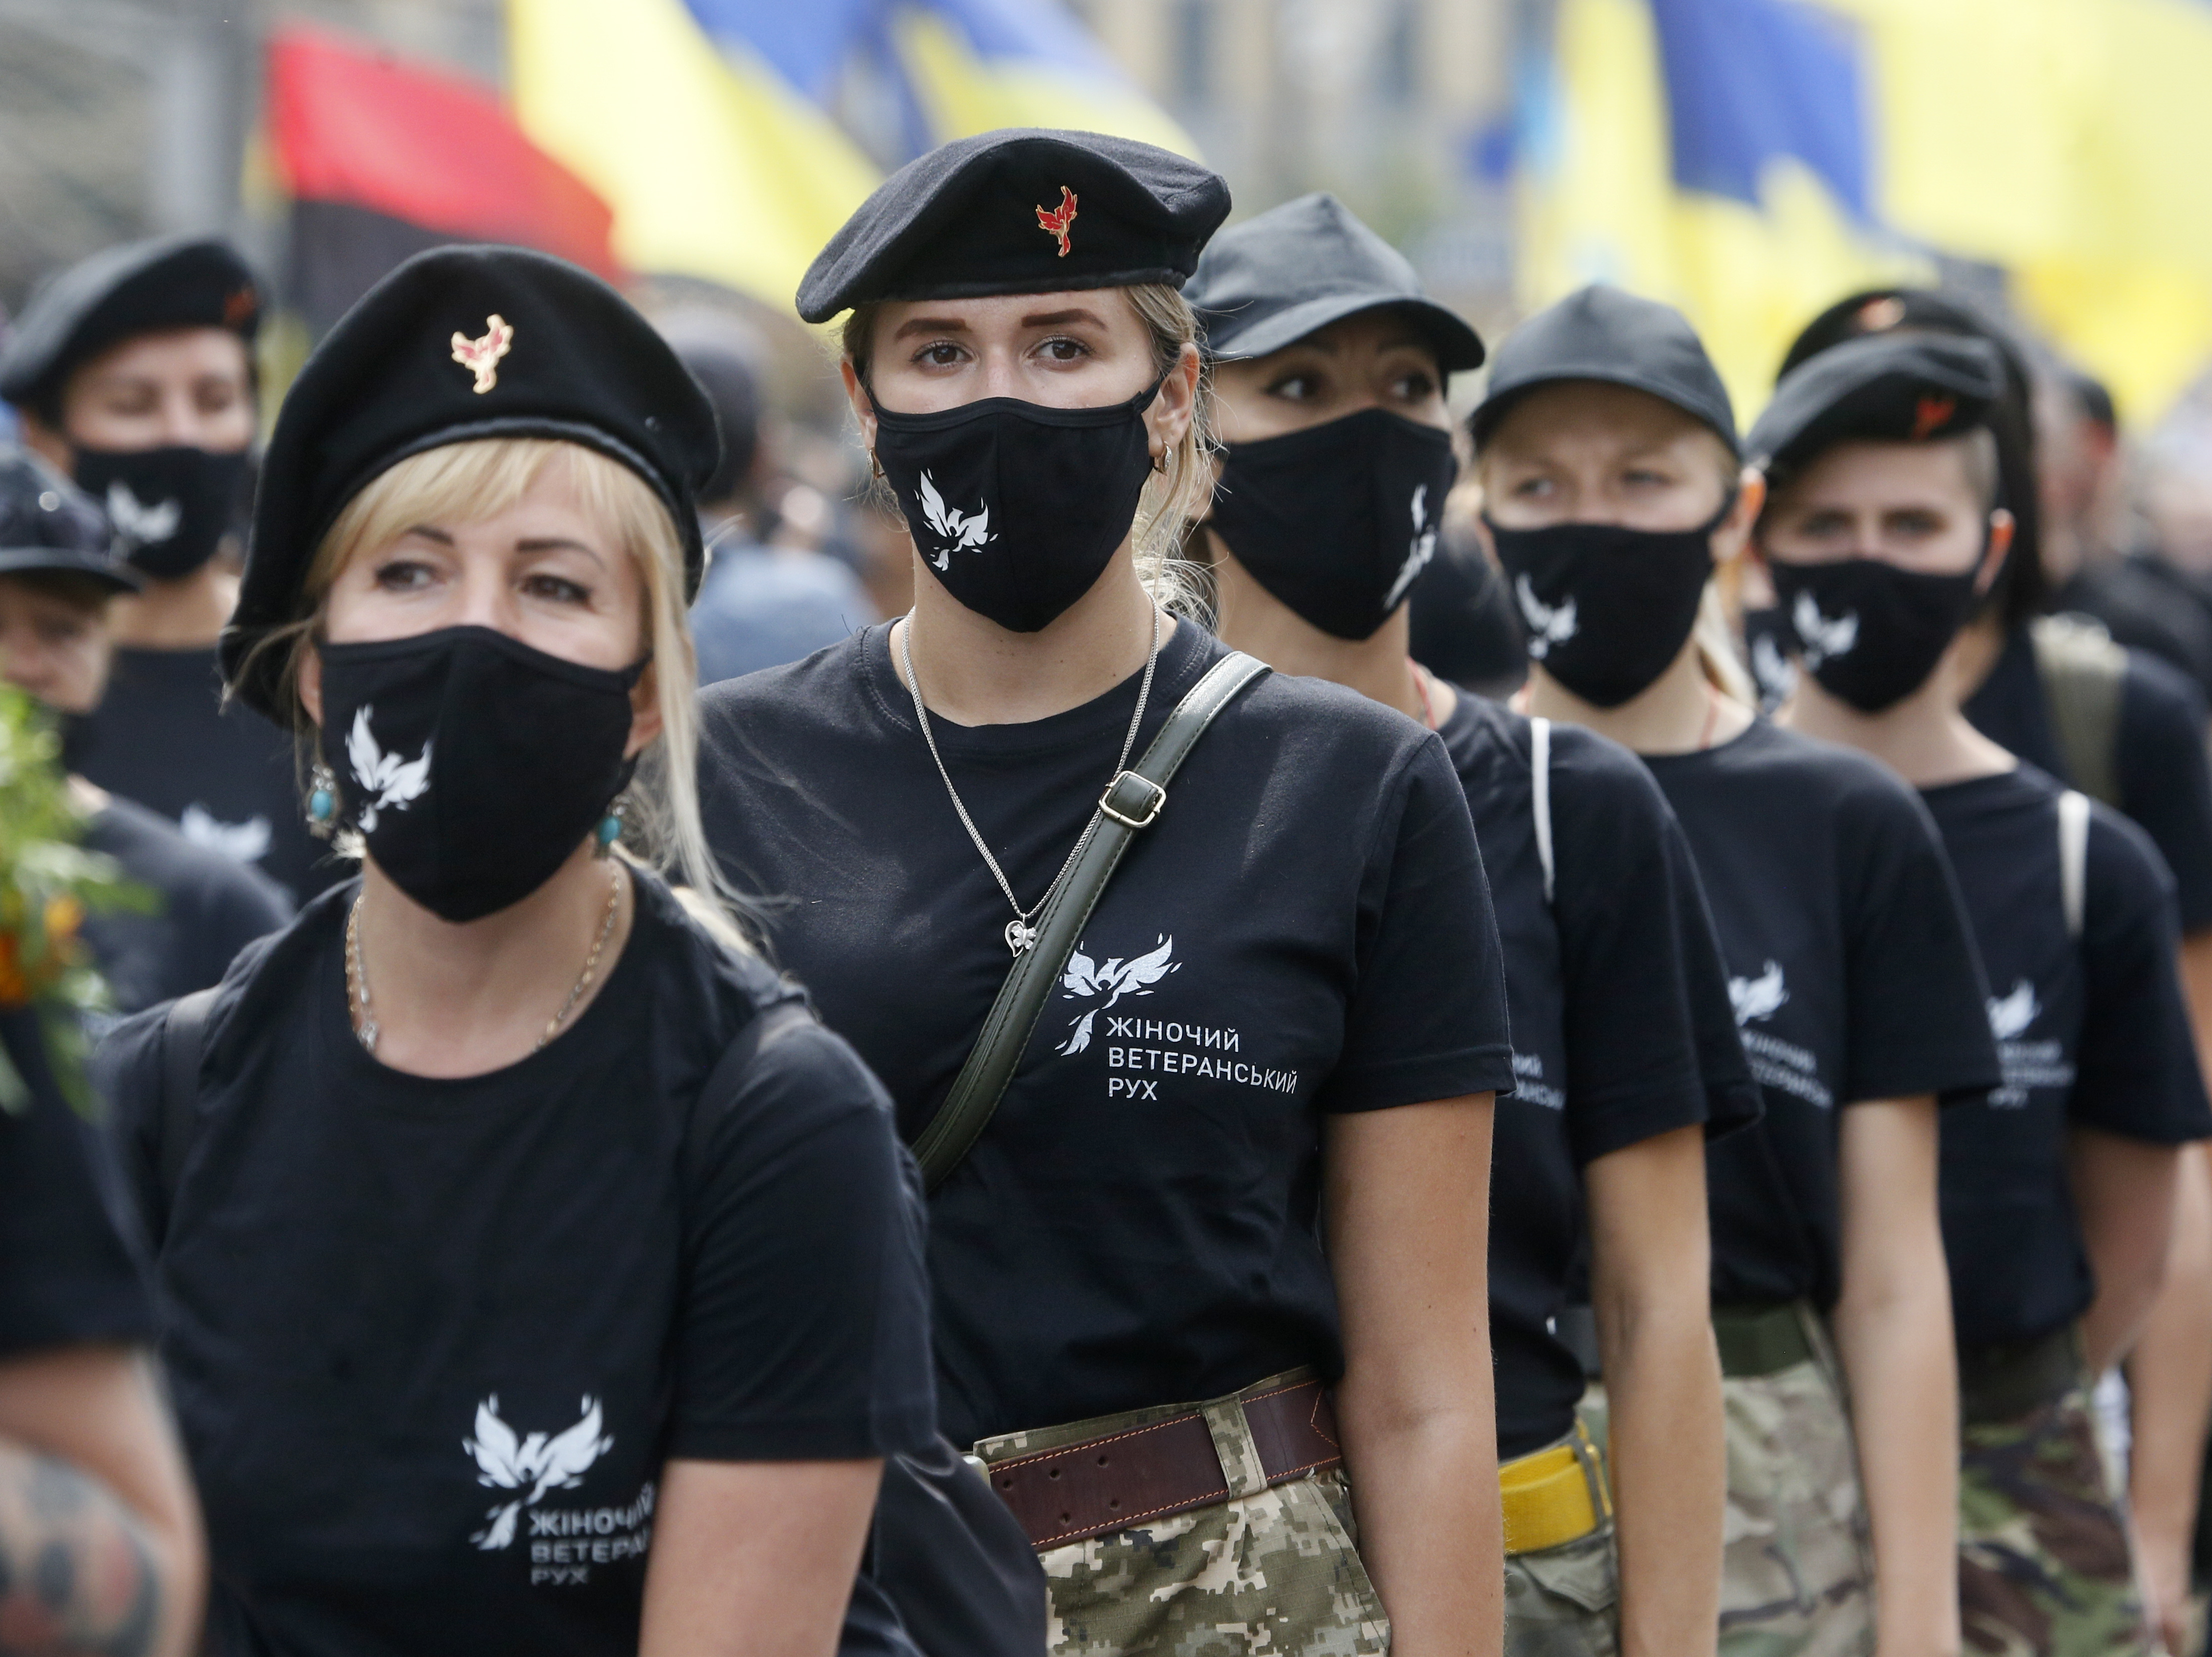 Lobsession chinoise pour les femmes ukrainiennes photo